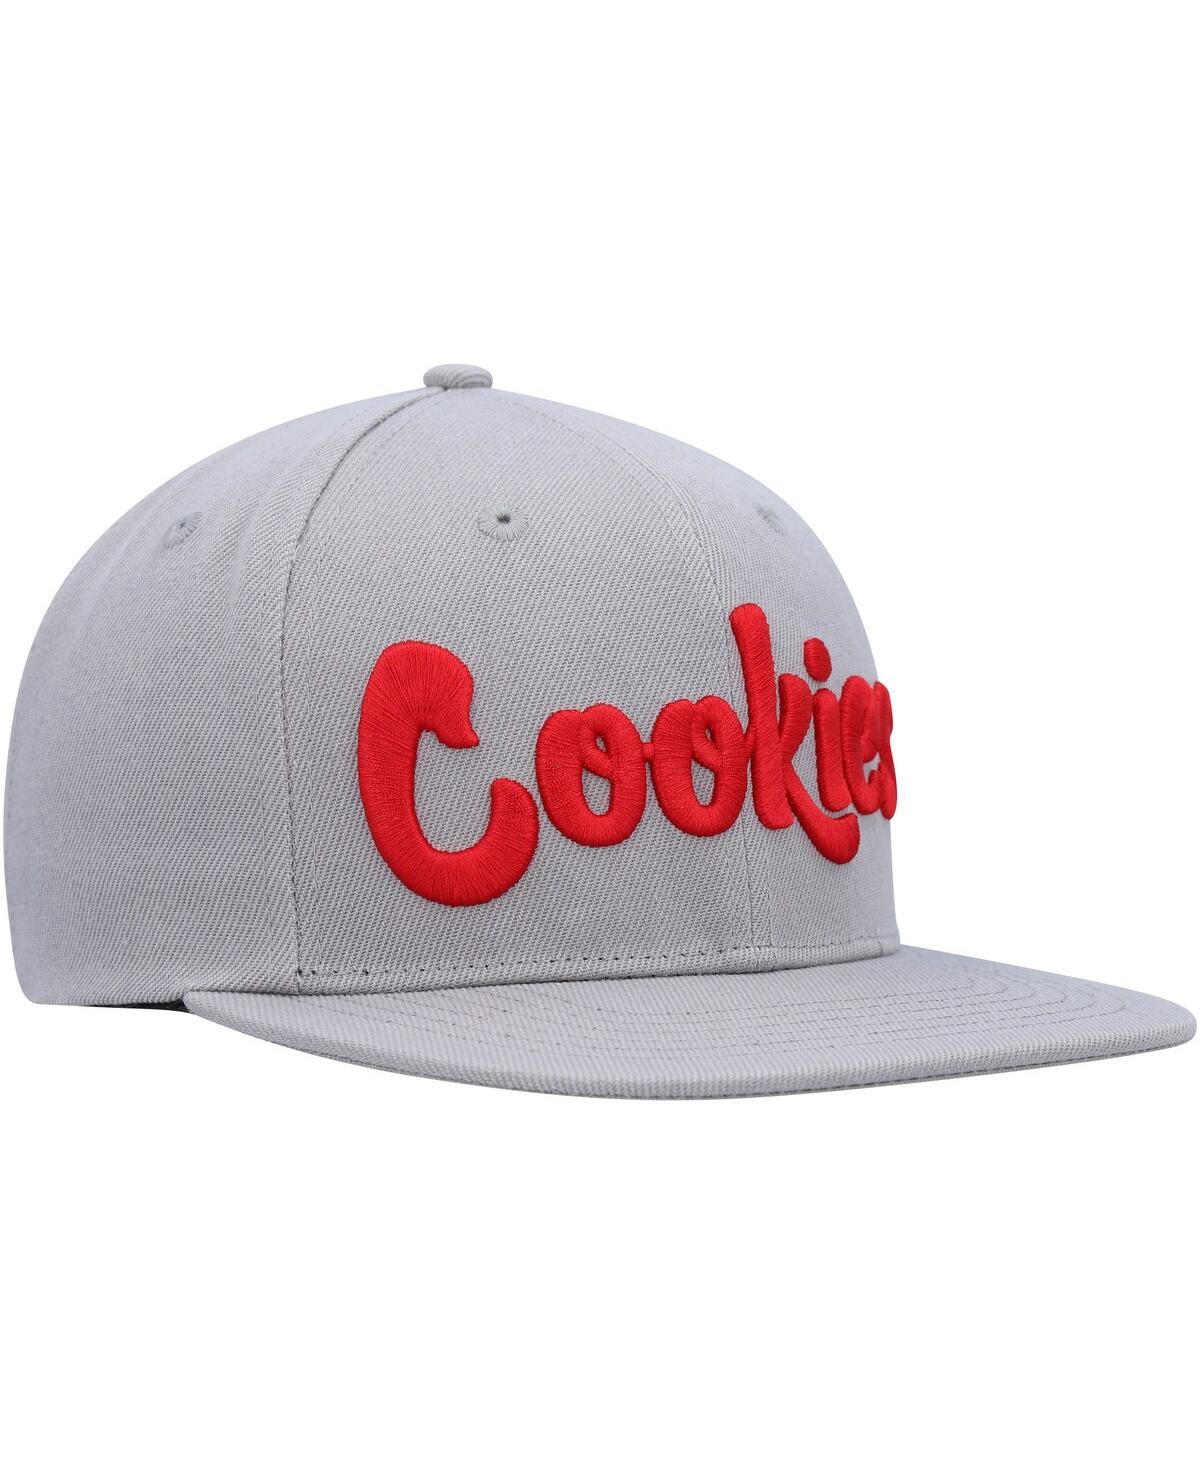 Shop Cookies Men's  Heather Gray Original Mint Snapback Hat